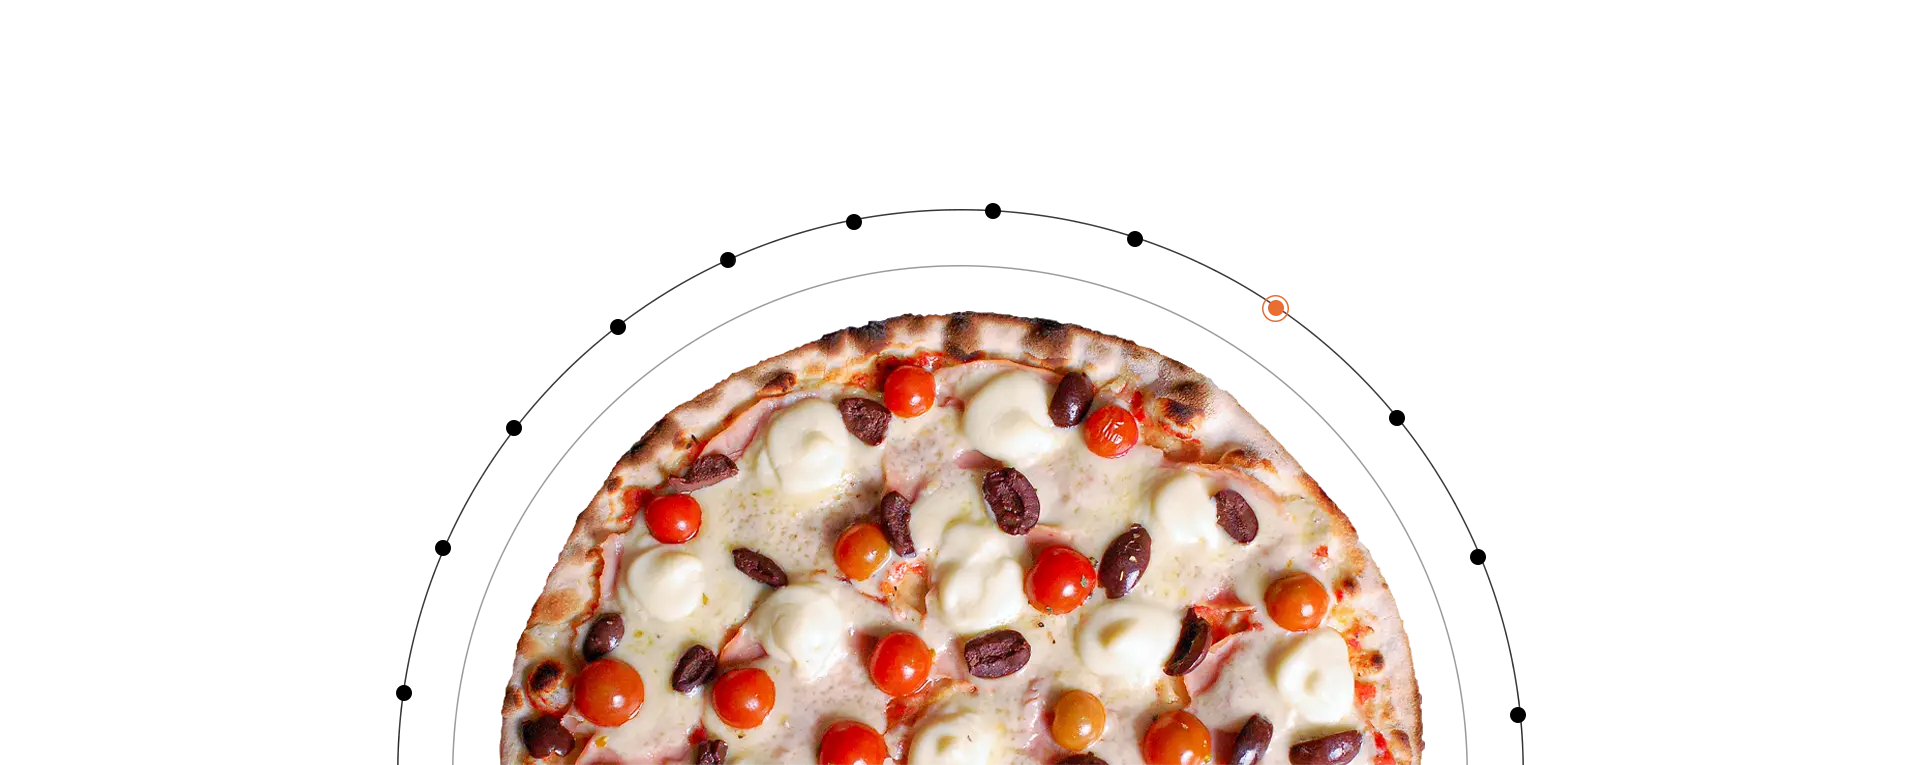 elipse_pizza-americana.webp